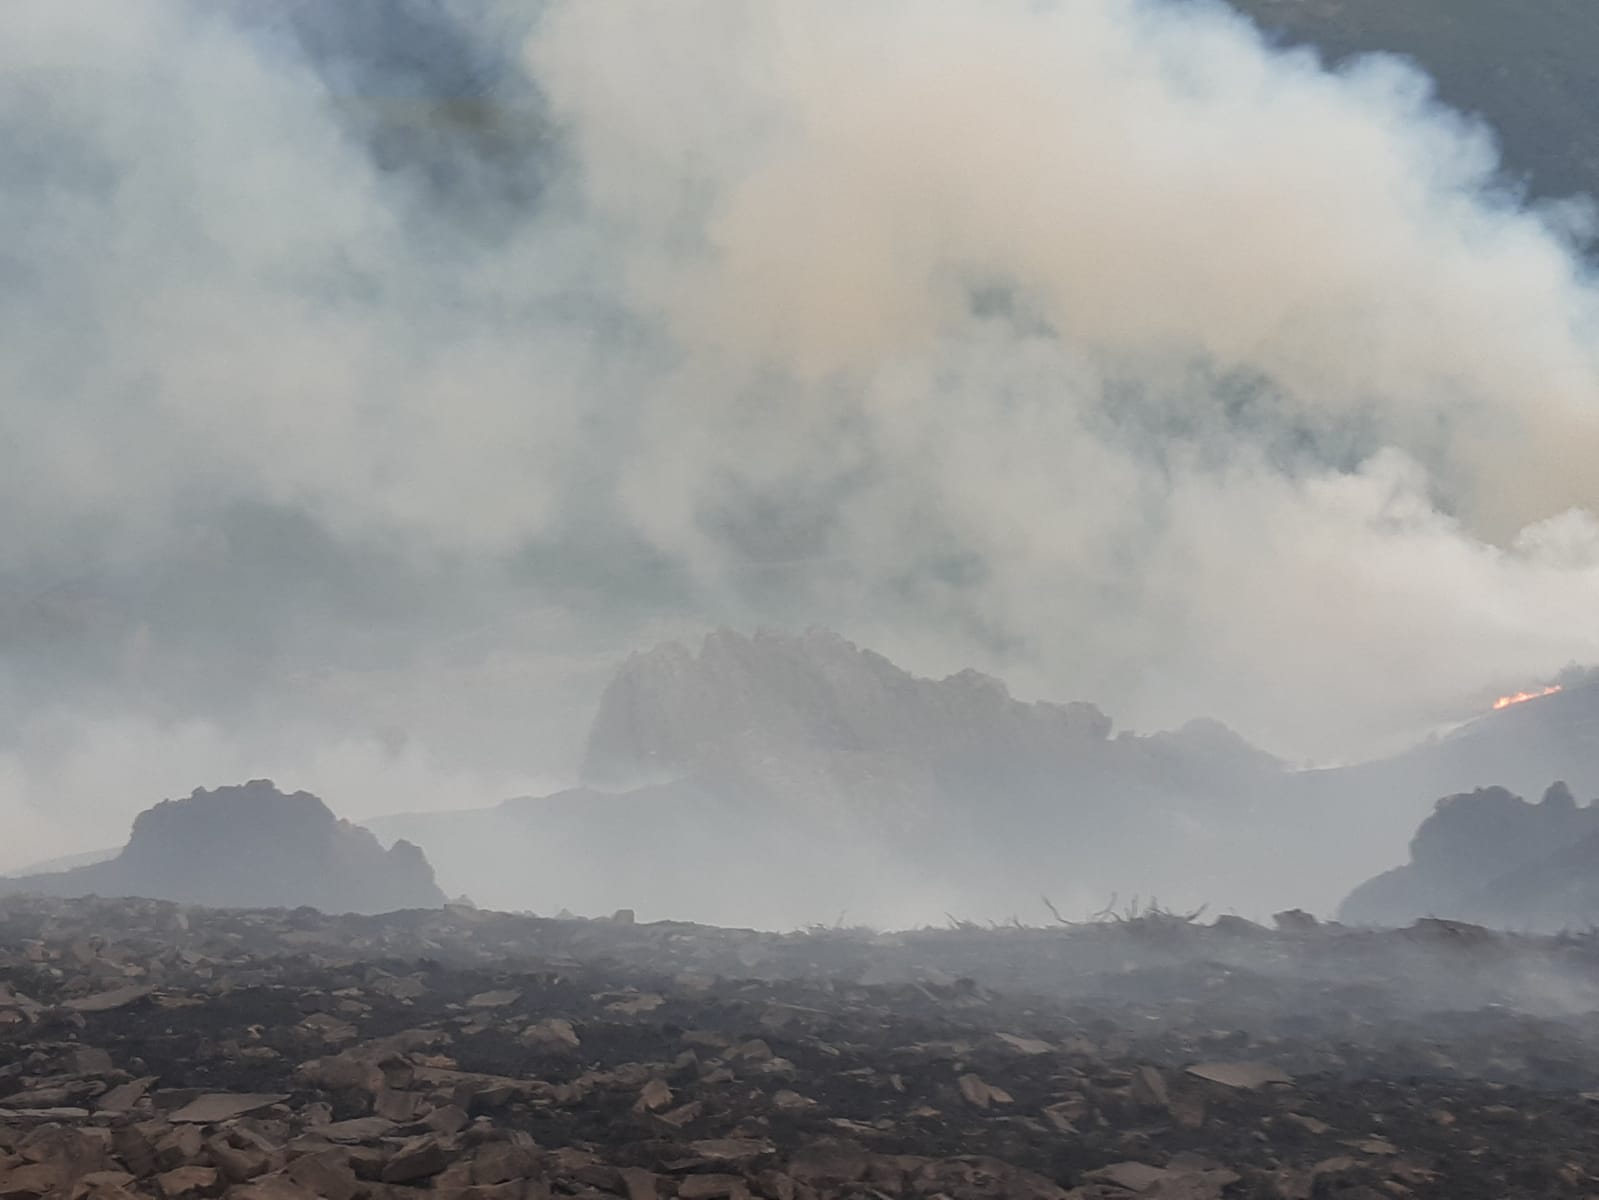 El fuego sigue devorando hectáreas en León y muchos incendios permanecen fuera de control, como este de de Valdueza.